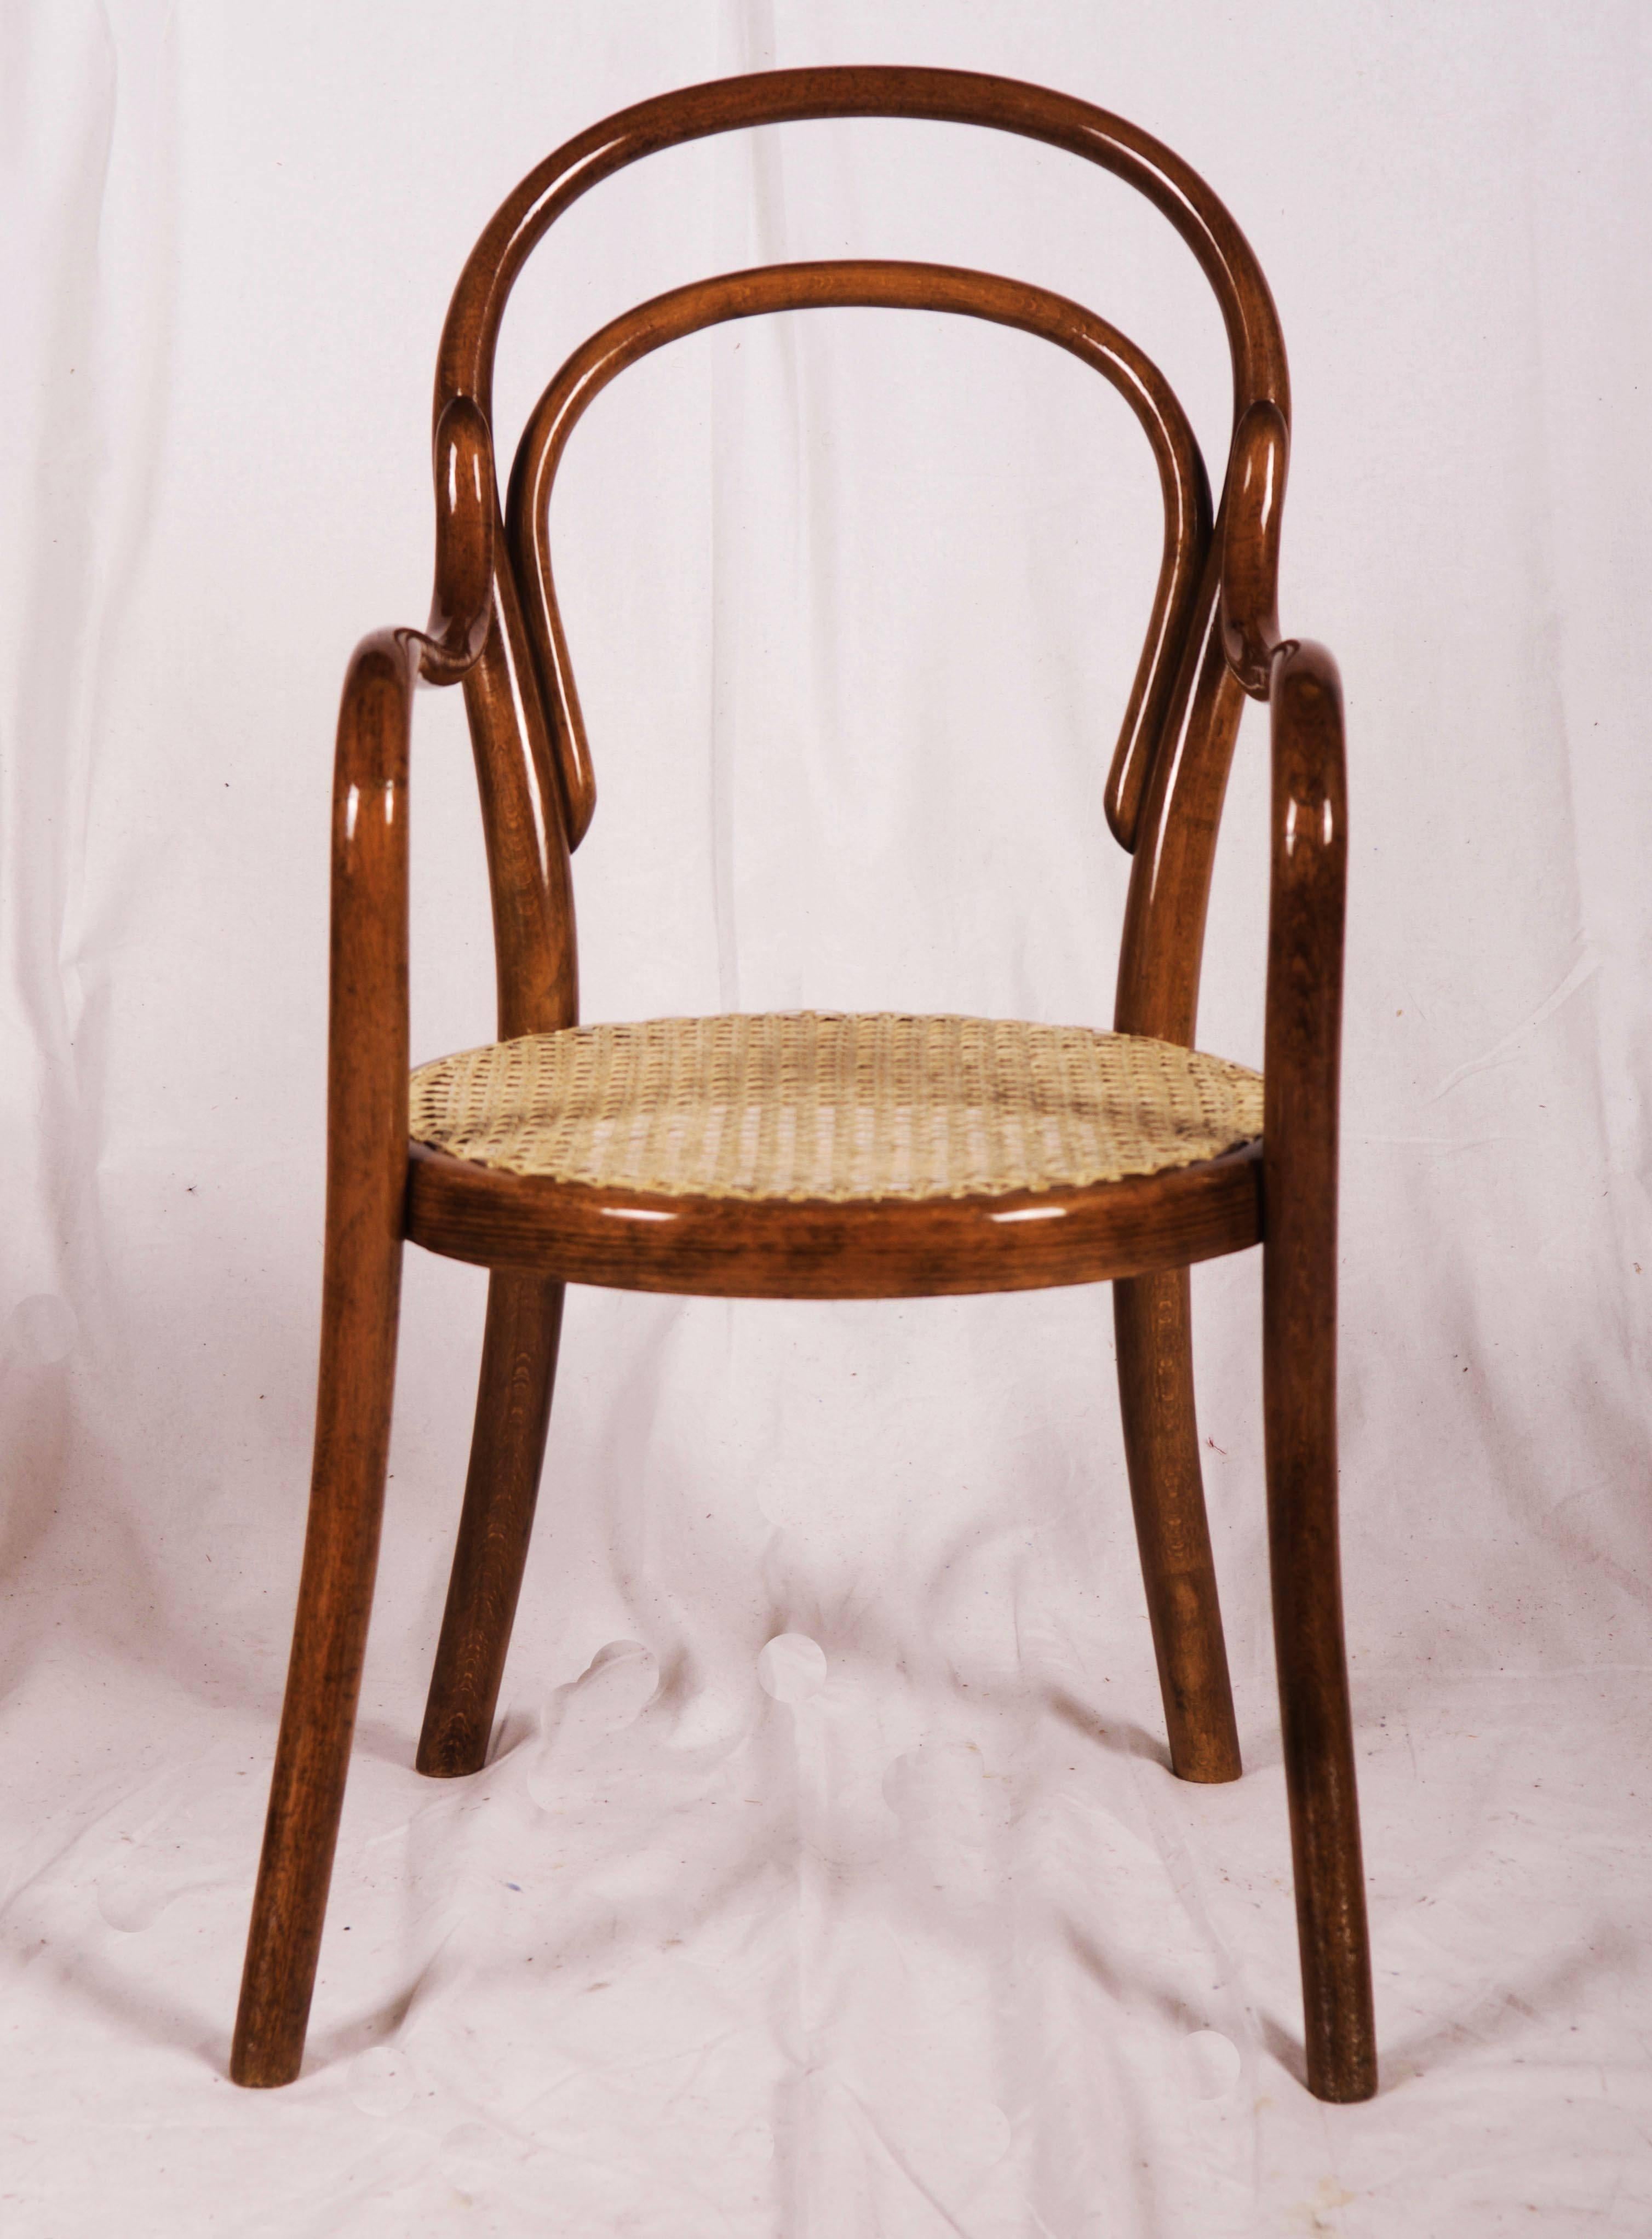 Thonet Nr. 1 en bois de hêtre courbé, mentionné pour la première fois dans le catalogue des années 1880. Celui-ci date des années 1910-1920.
La chaise est entièrement restaurée, teintée en noyer et polie à la gomme-laque avec une nouvelle mise en